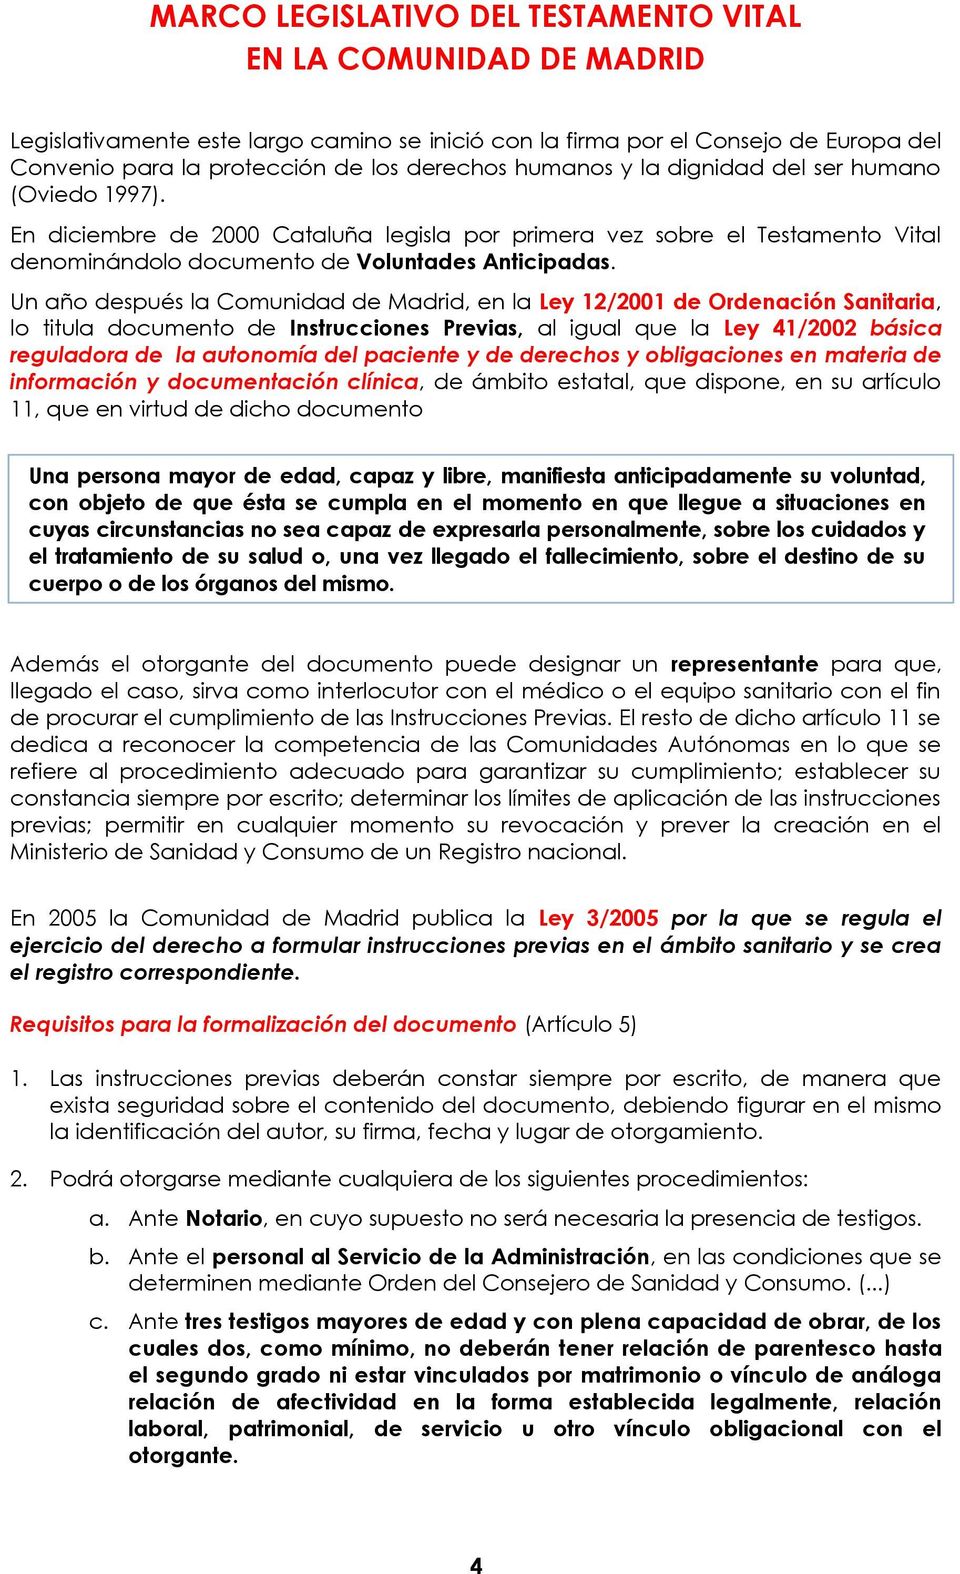 Un año después la Comunidad de Madrid, en la Ley 12/2001 de Ordenación Sanitaria, lo titula documento de Instrucciones Previas, al igual que la Ley 41/2002 básica reguladora de la autonomía del